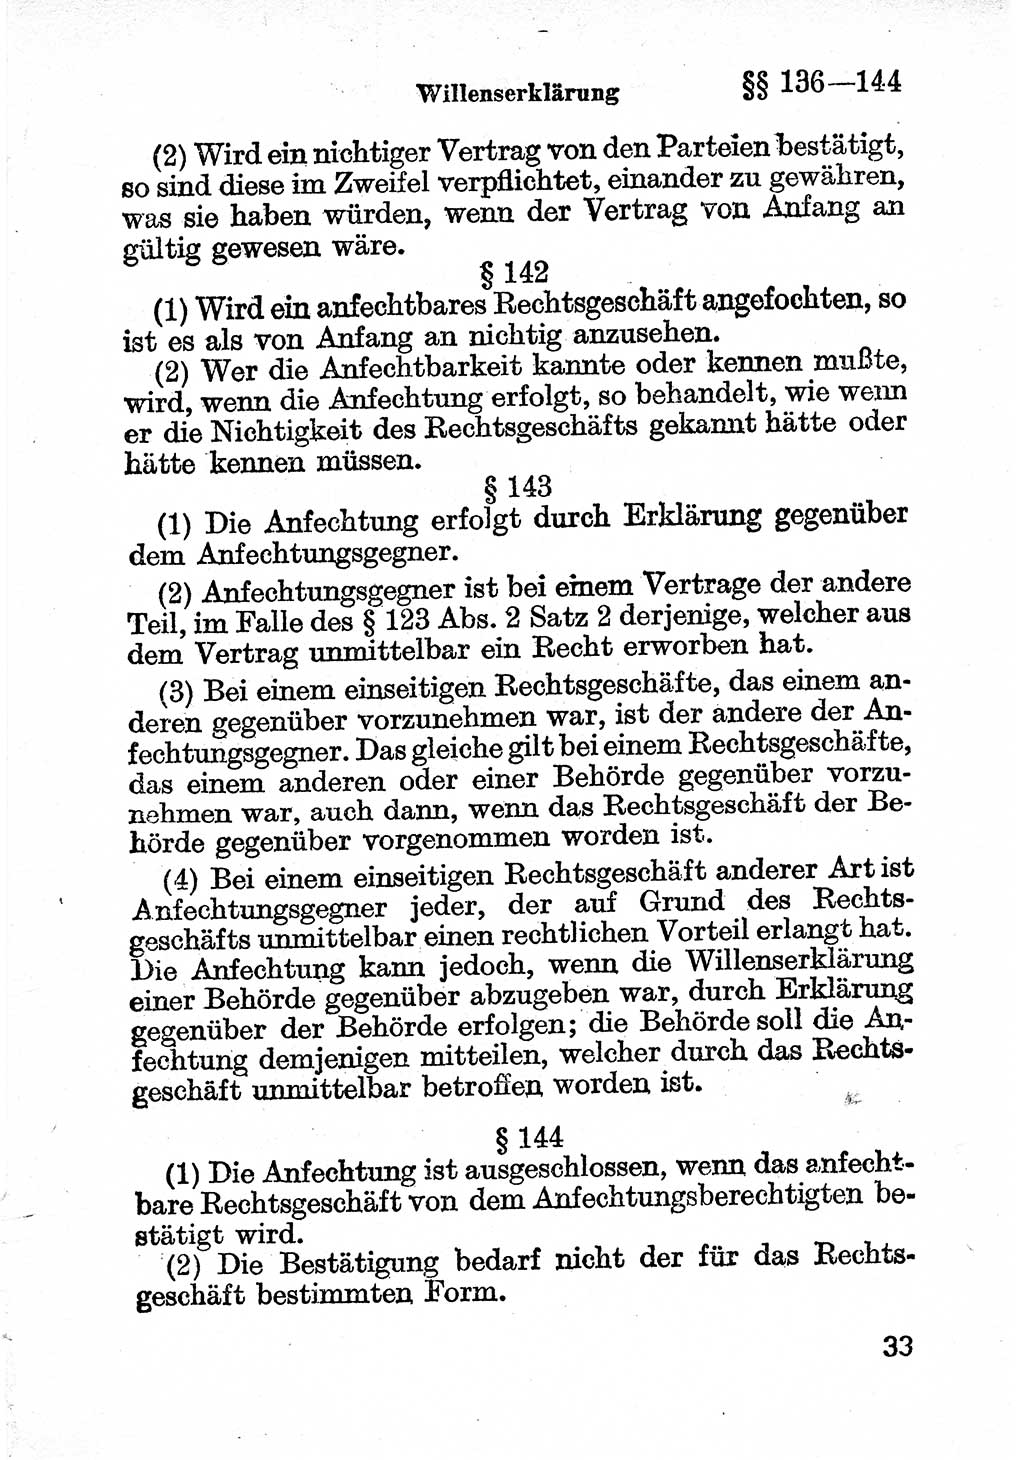 Bürgerliches Gesetzbuch (BGB) nebst wichtigen Nebengesetzen [Deutsche Demokratische Republik (DDR)] 1956, Seite 33 (BGB Nebenges. DDR 1956, S. 33)